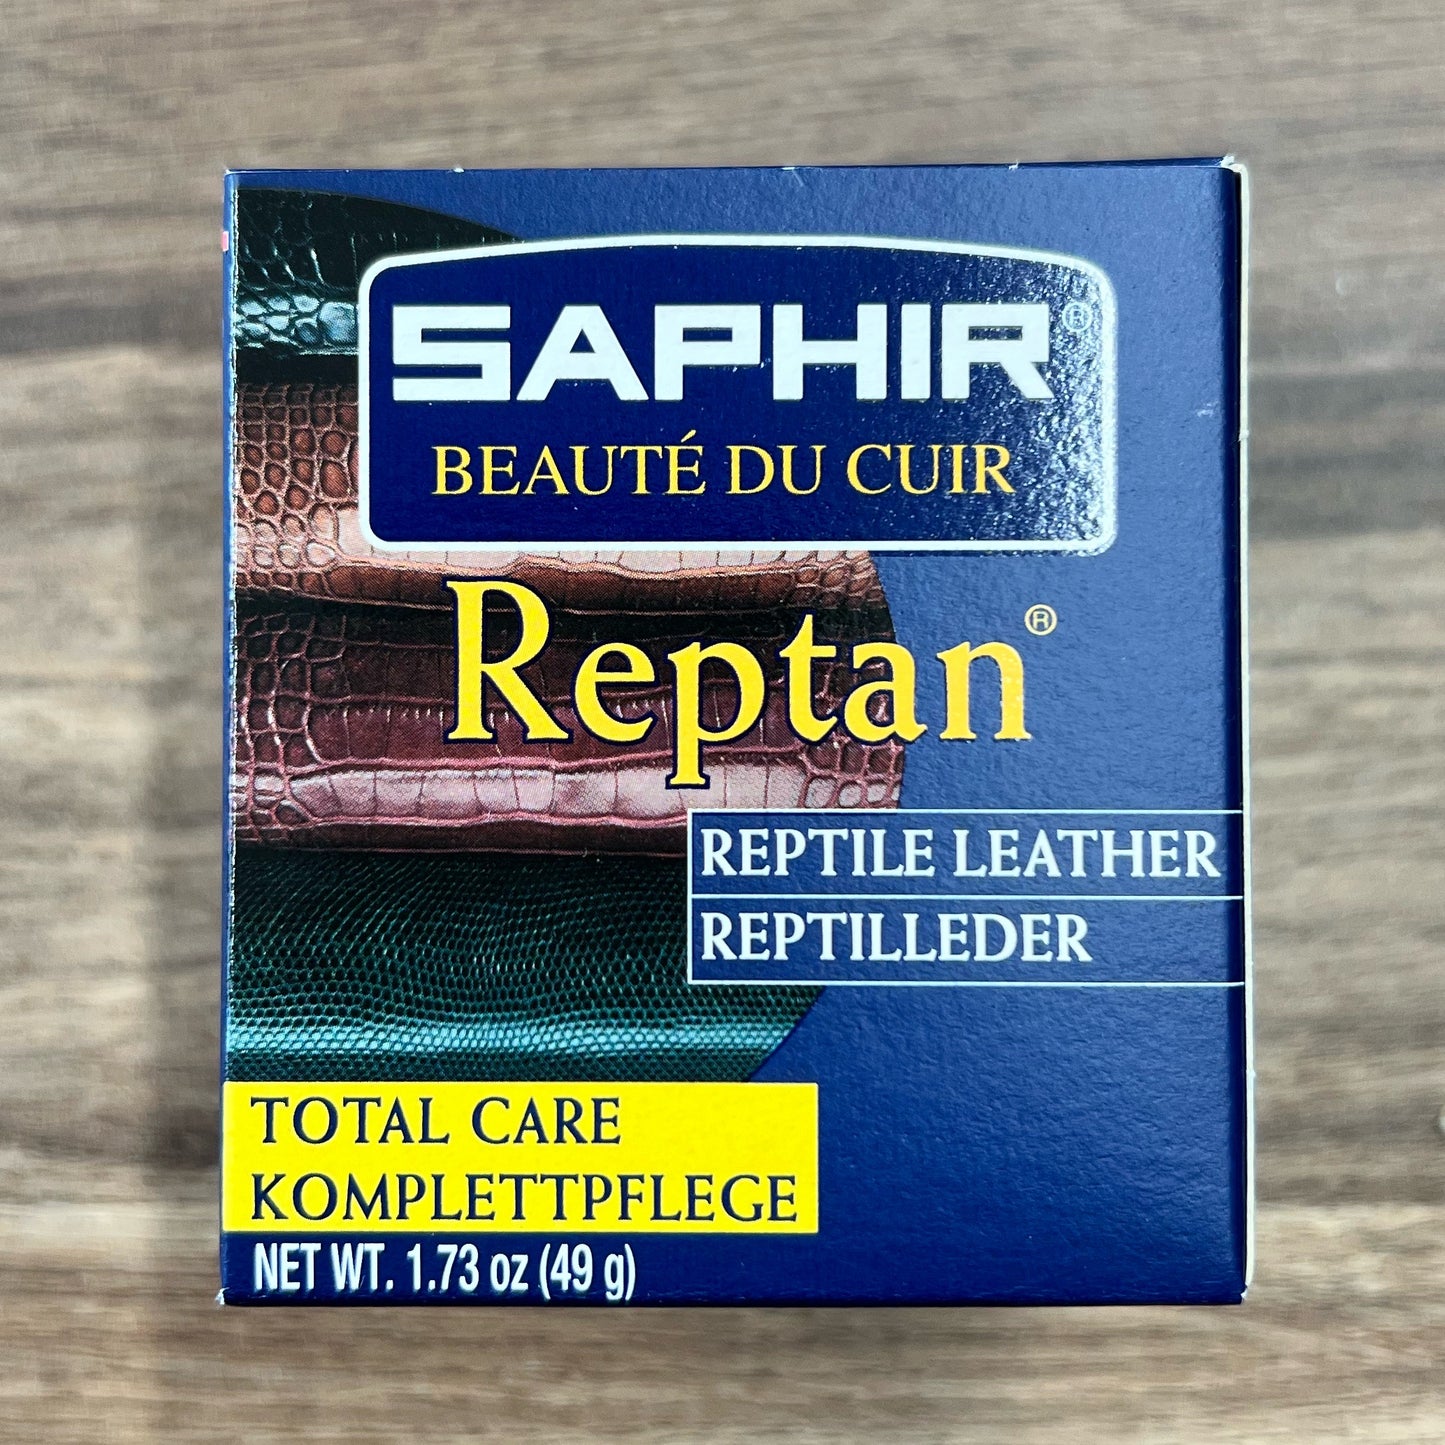 Saphir Reptan reptile leather conditioner cream